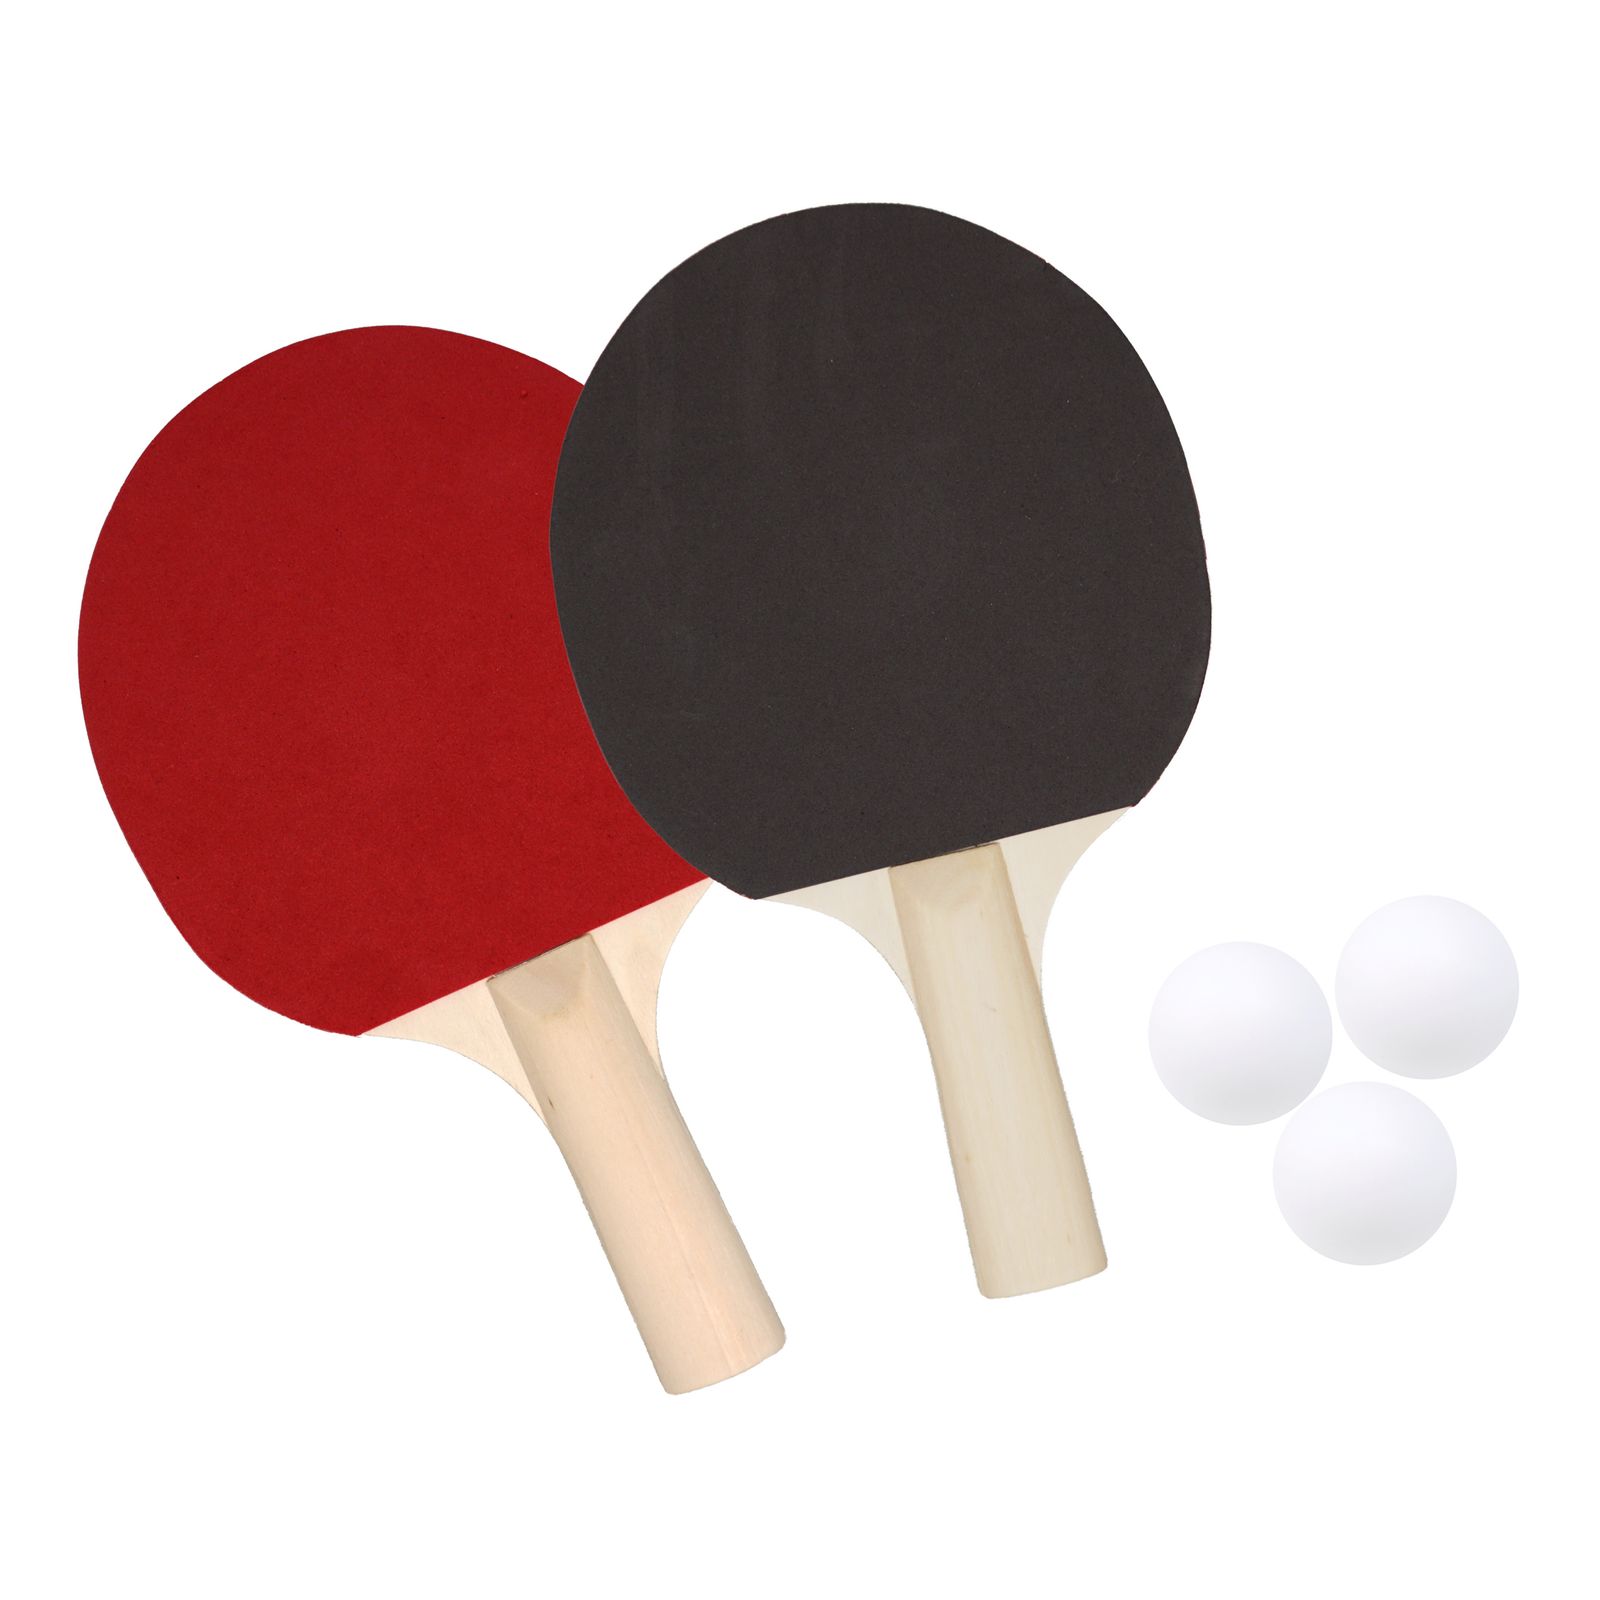 Tischtennisschläger Tischtennis Ping Pong Schläger Bälle mit Tragetasche 5 tlg 